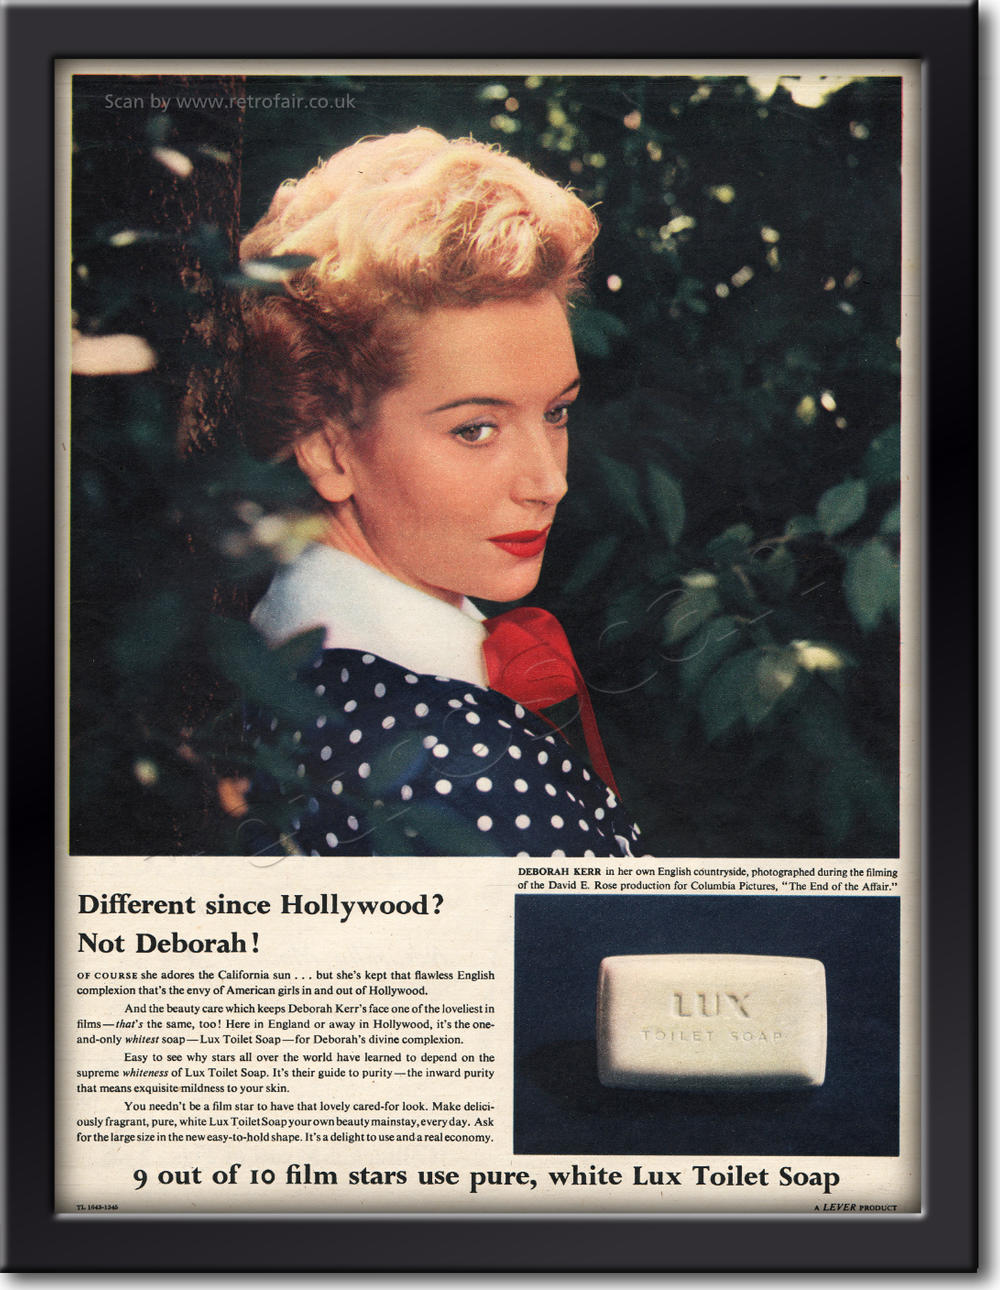 1955 vintage Lux Toilet Soap advert